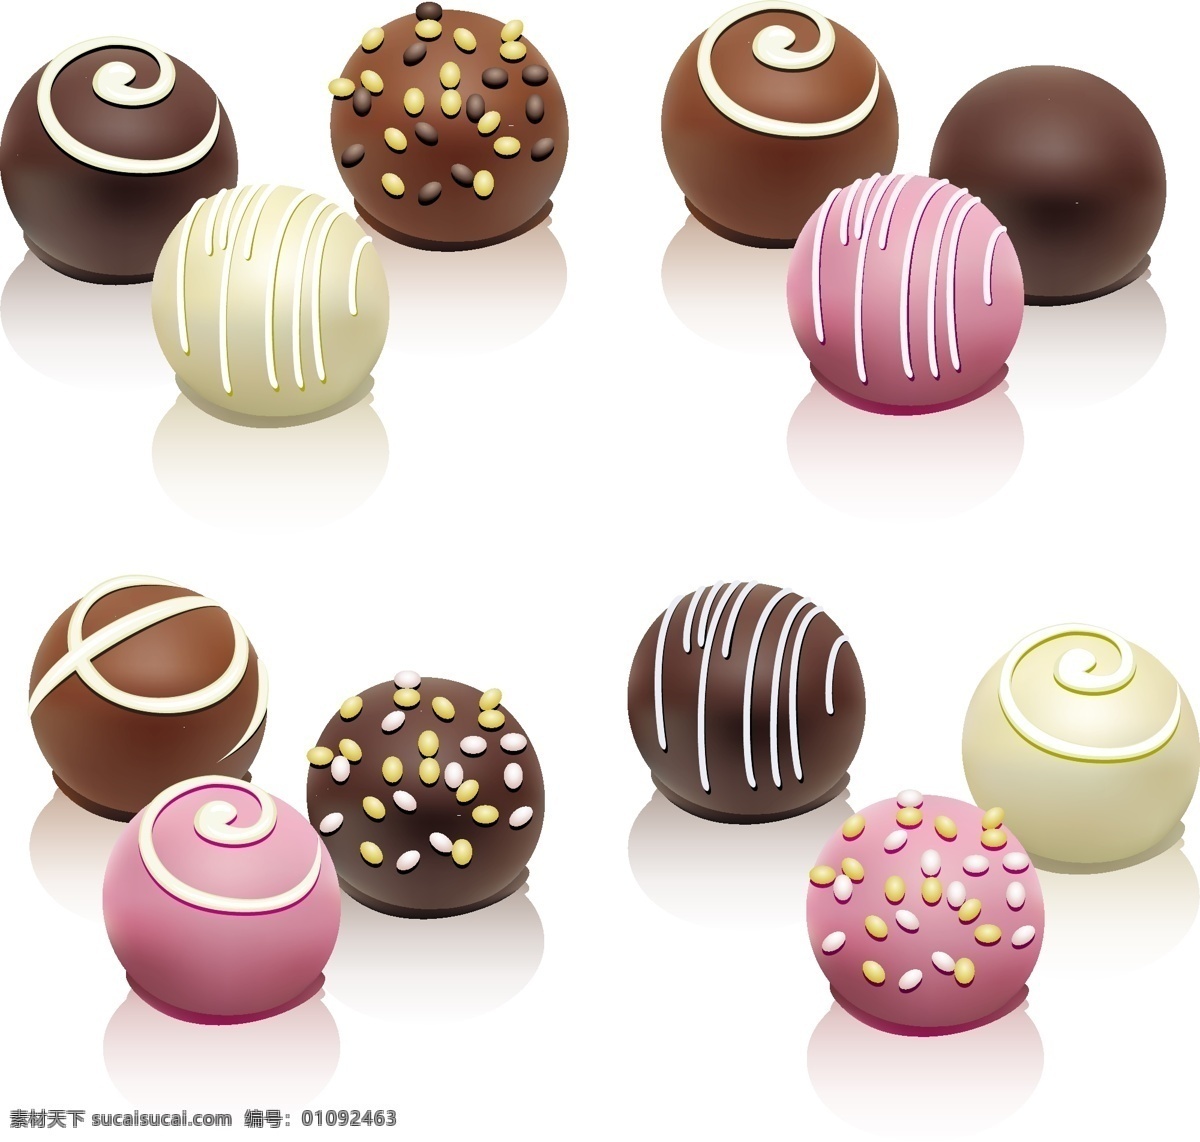 彩色 巧克力 糖果 巧克力球 食物 美食 卡通插画 餐饮美食 生活百科 矢量素材 白色